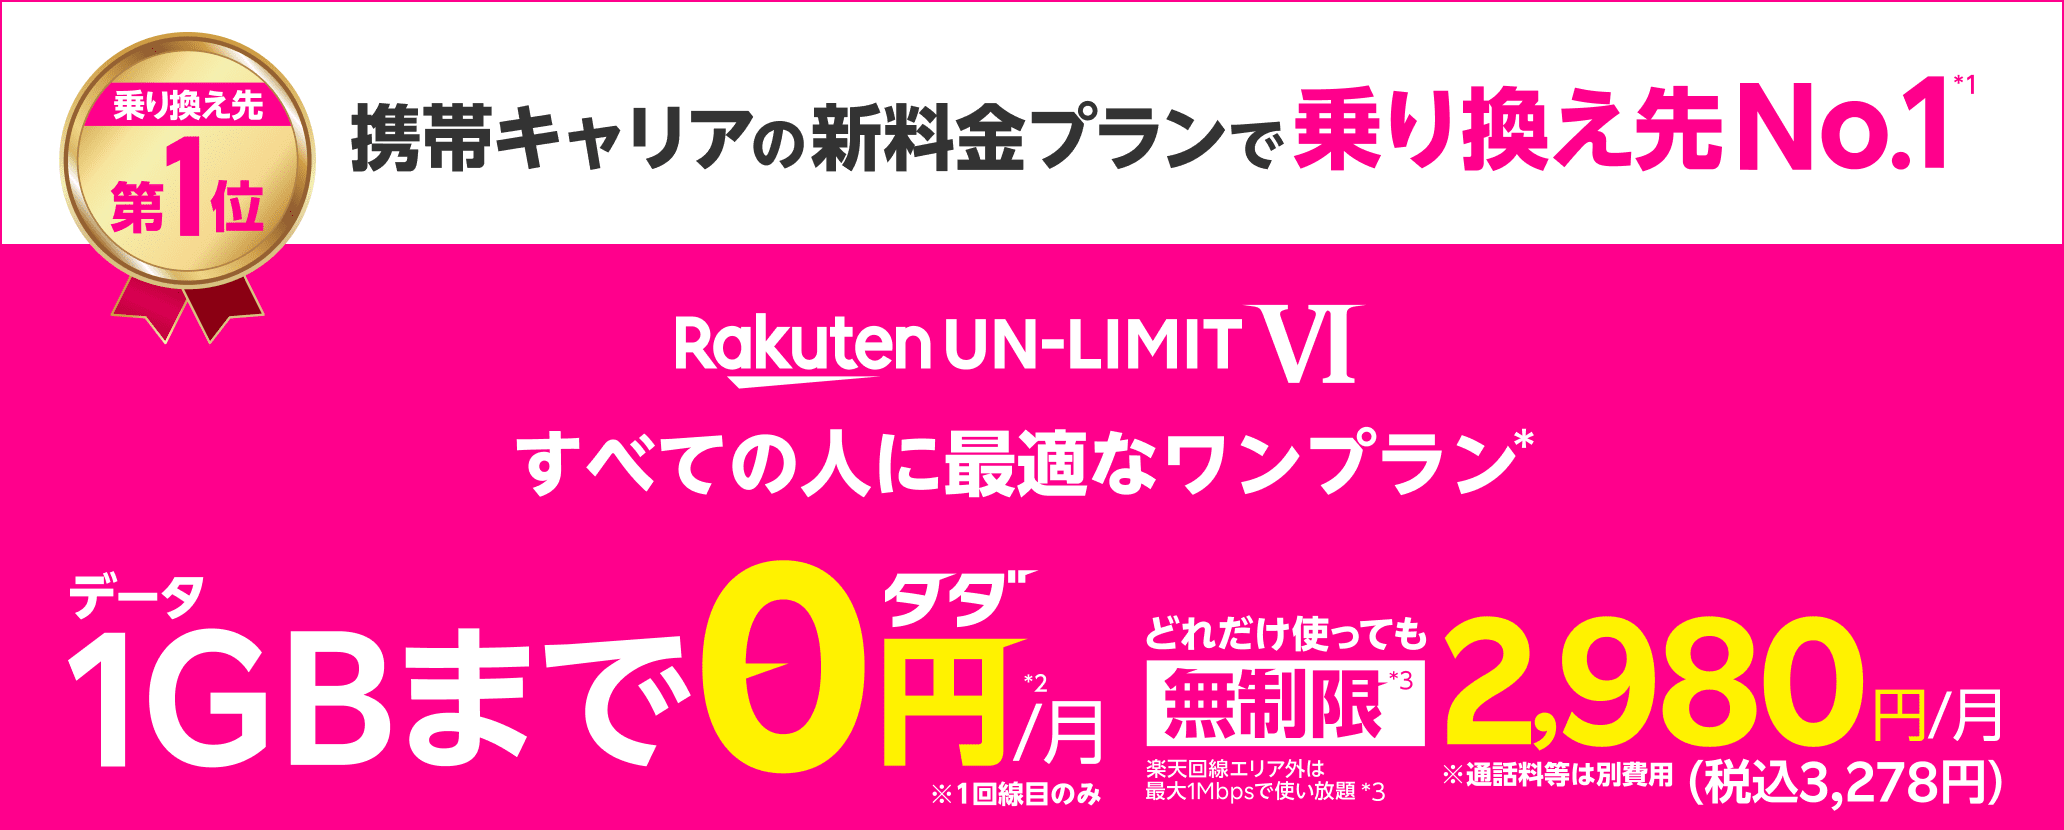 Rakuten UN-LIMIT VI すべての人に最適なワンプラン データ1GBまで0円/月*1 *1回線目のみ どれだけ使っても無制限*2 楽天回線エリア外は最大1Mbpsで使い放題*2 2,980円/月（税込3,278円）※通話料等は別費用 Rakuten Linkアプリ利用で 国内通話かけ放題*3